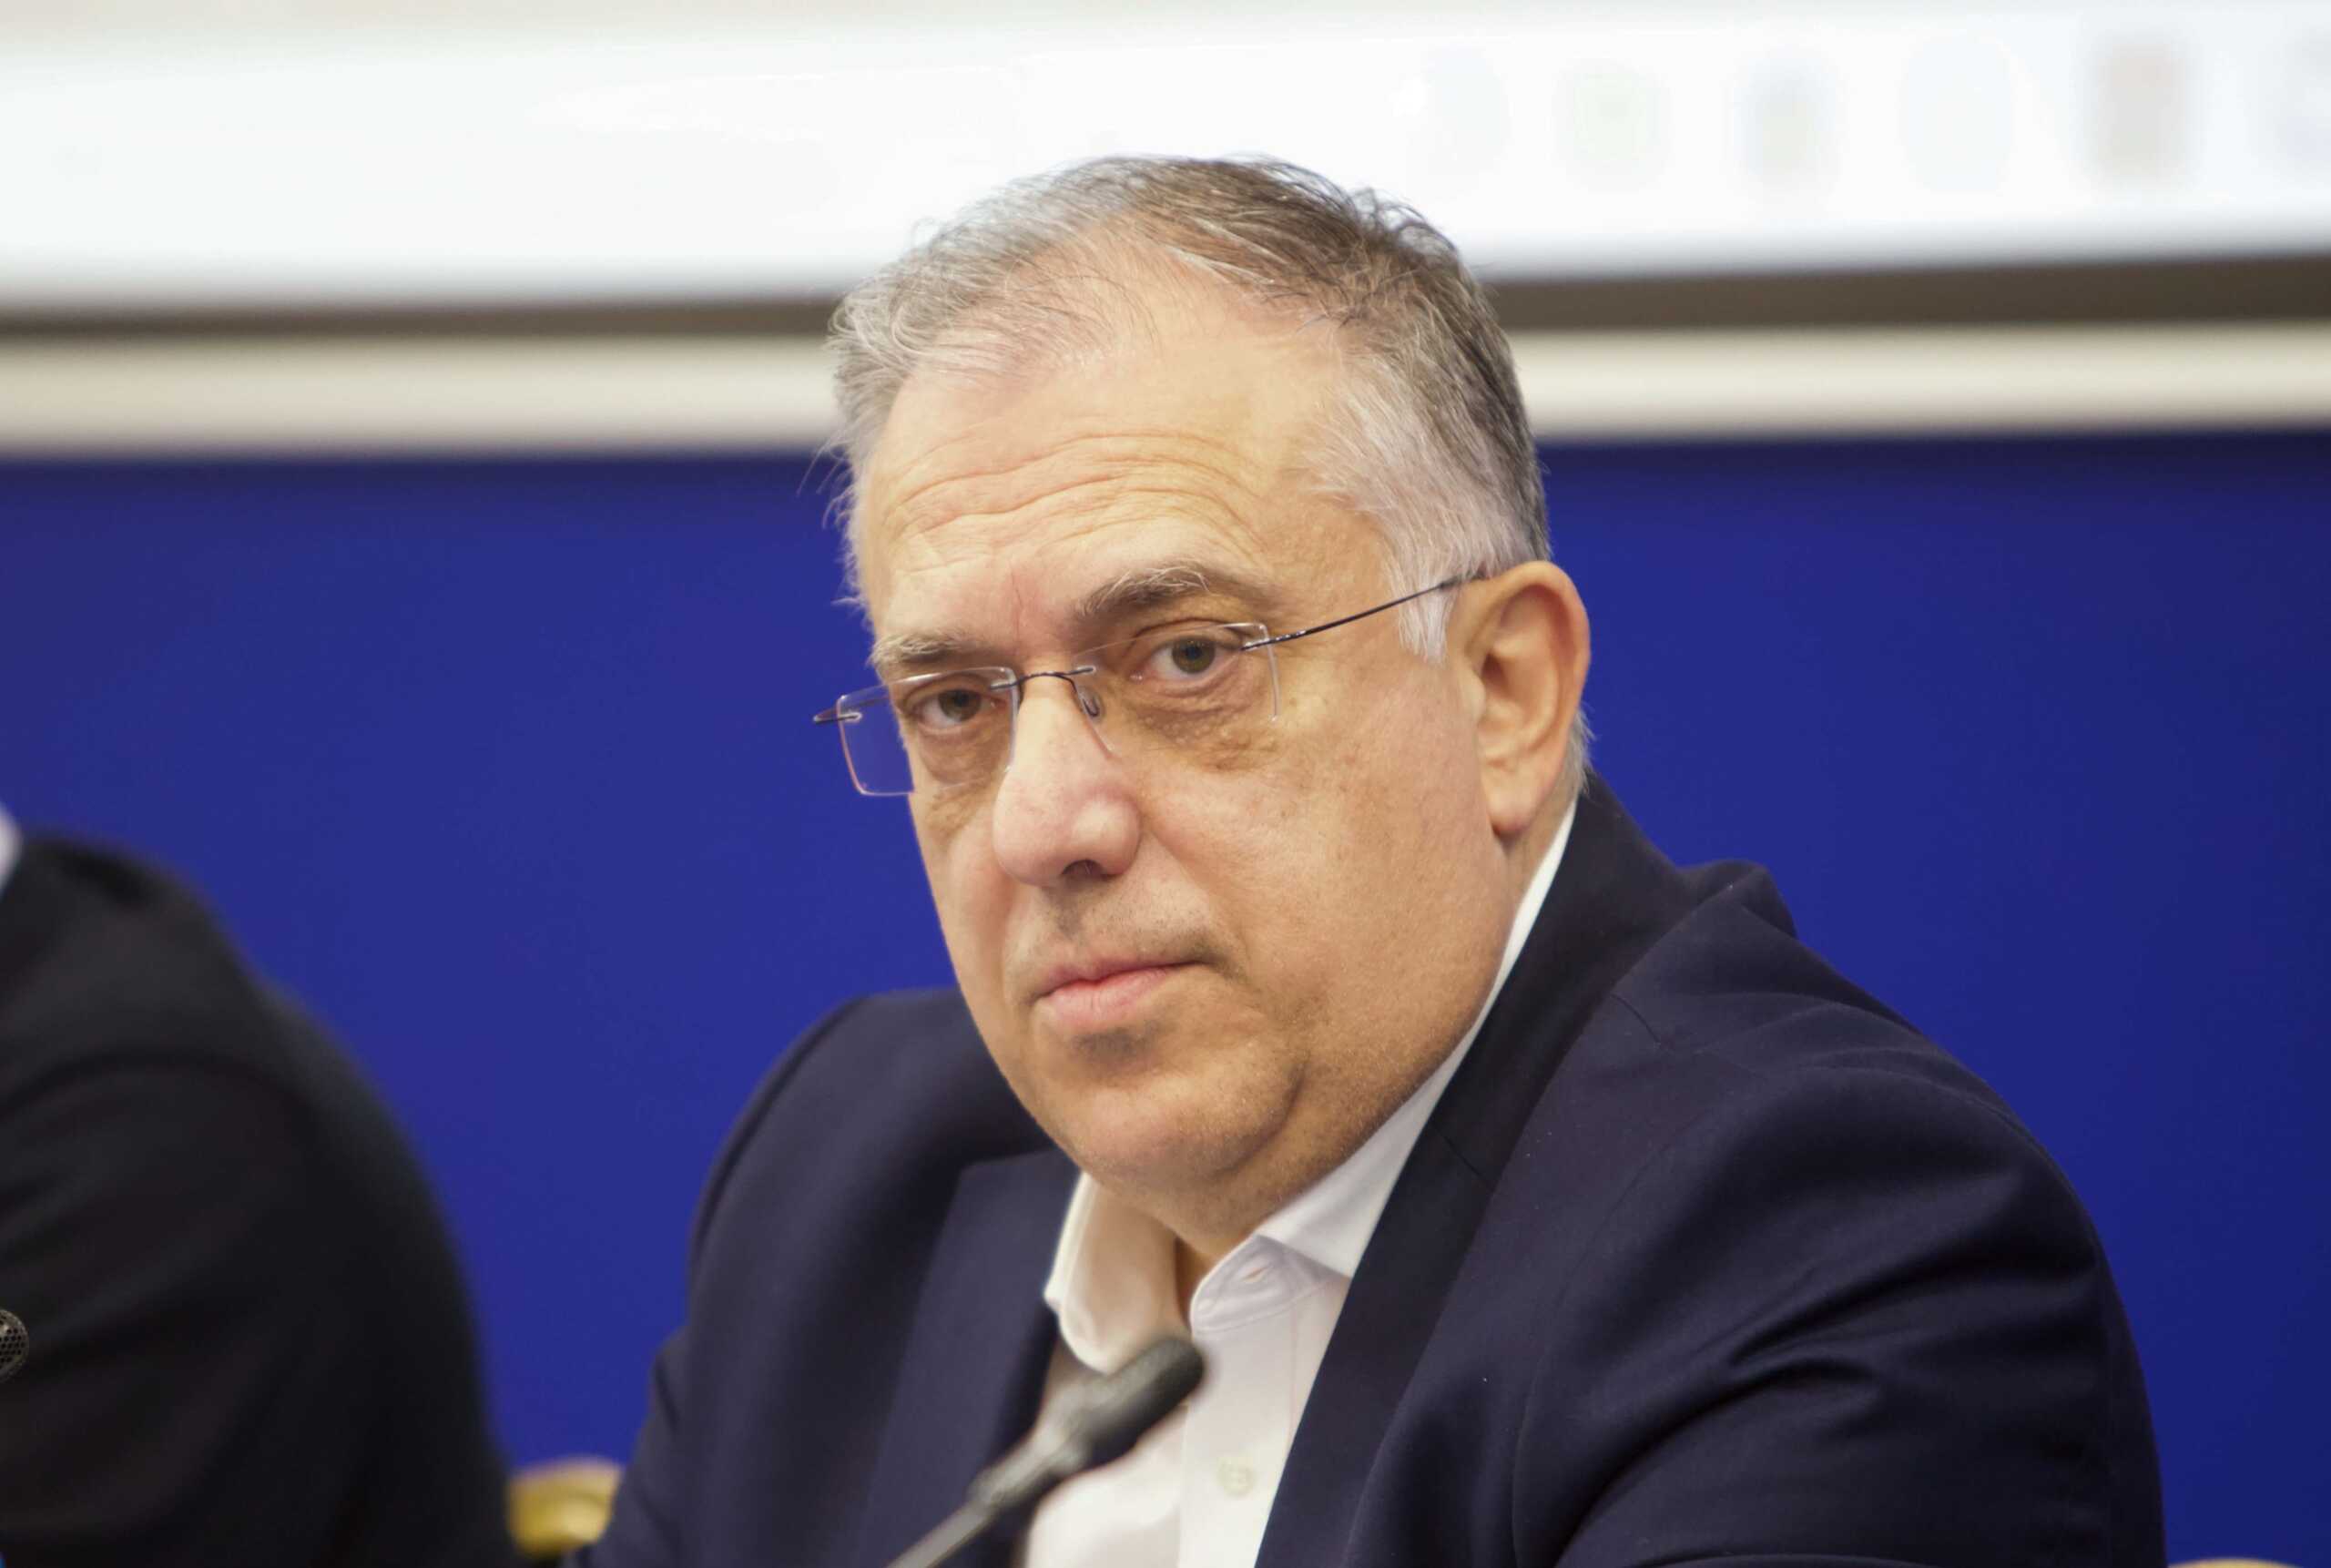 Θεοδωρικάκος: Ο Ηλίας Νικολακόπουλος συνέδεσε το όνομά του με την ανώτατη δημοκρατική στιγμή, τις εκλογές